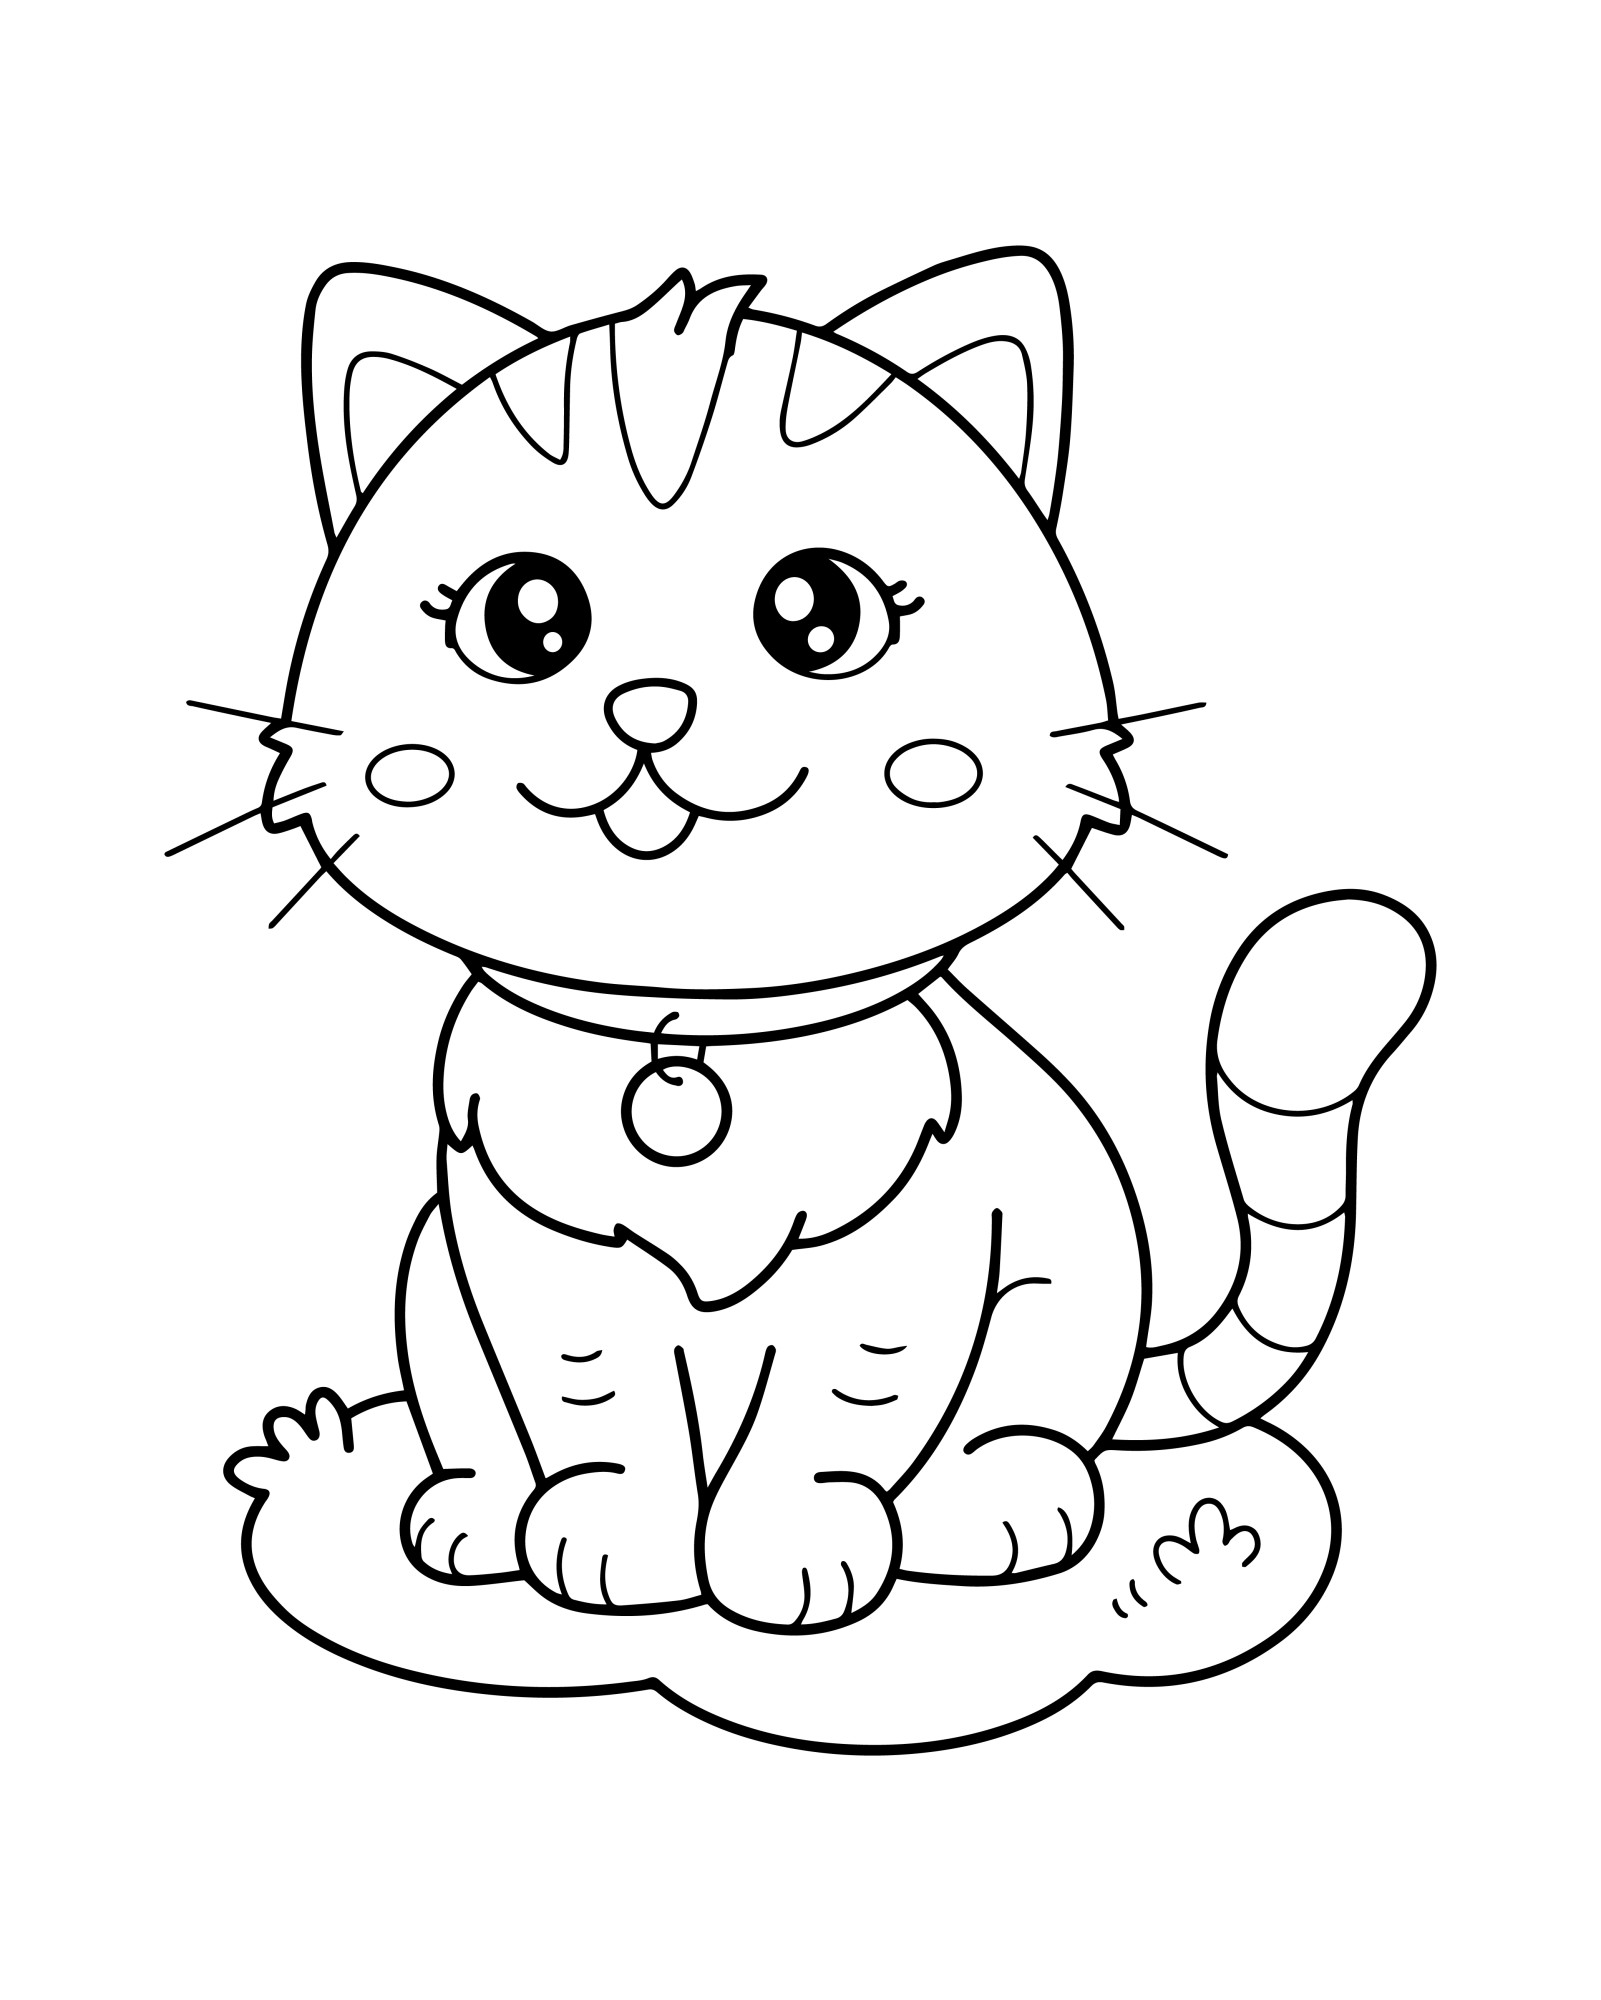 Раскраска для детей: милый котенок